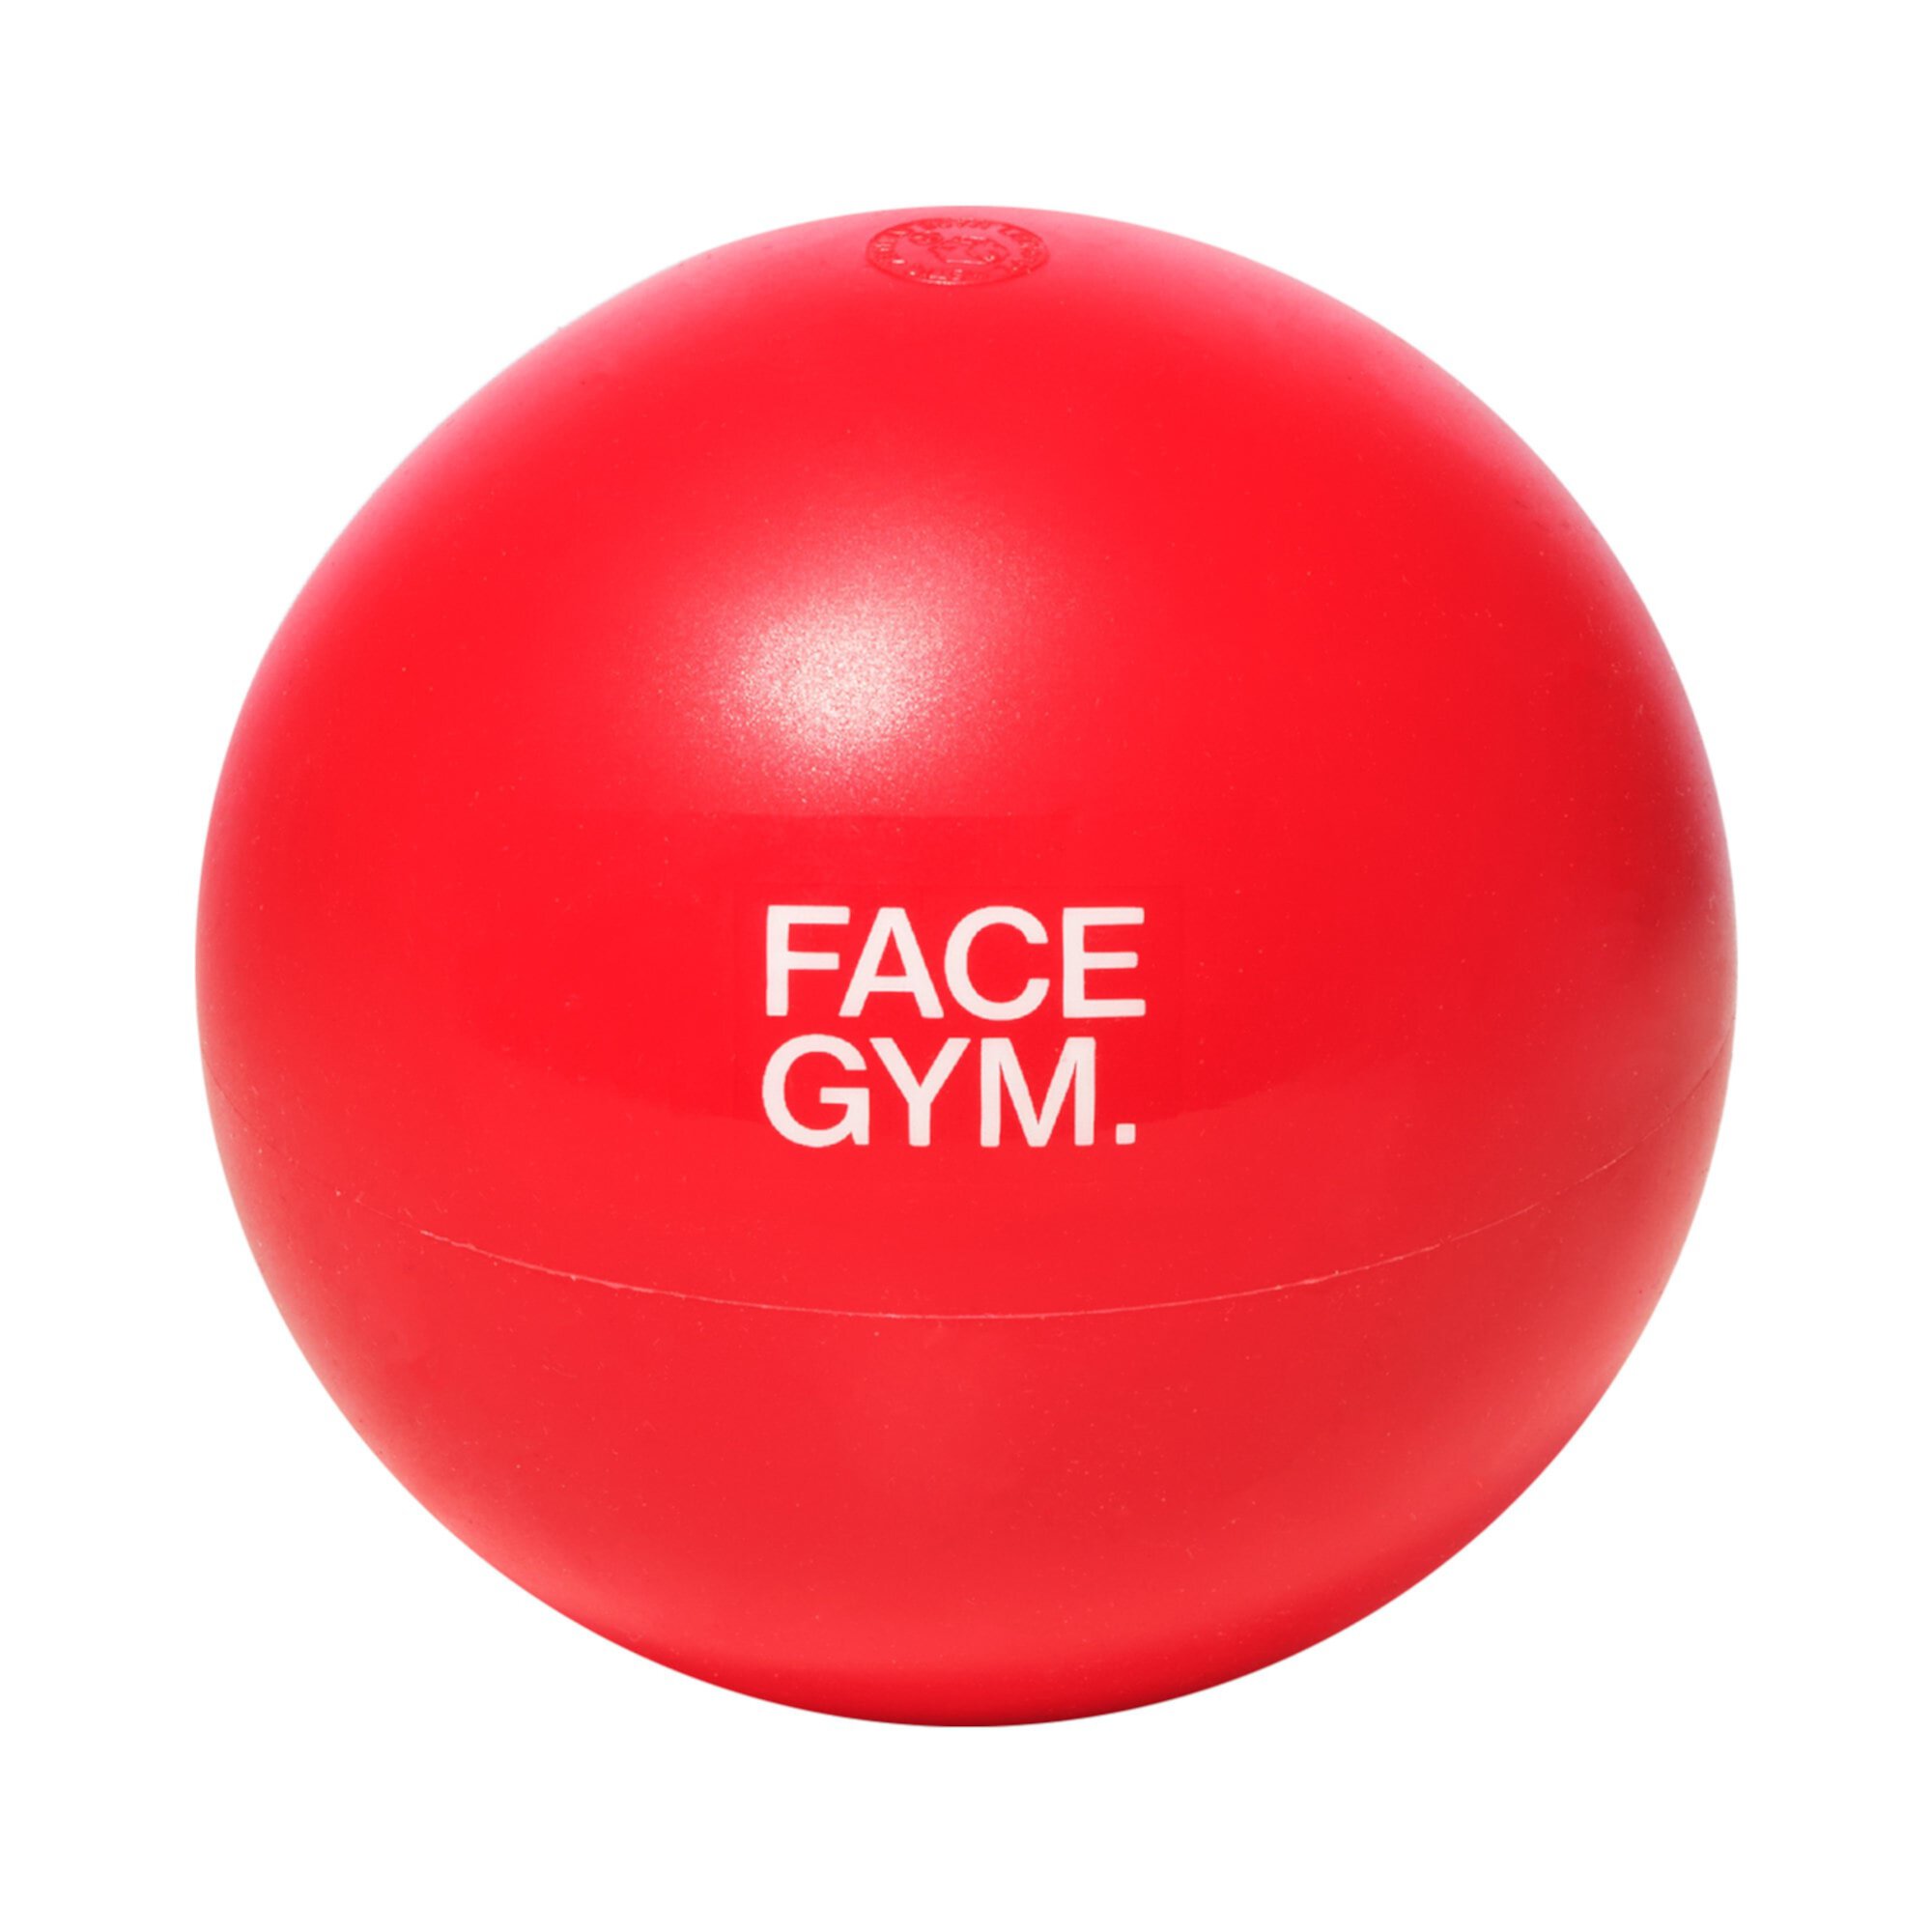 Инструмент для снятия натяжения лицевого шарика FaceGym